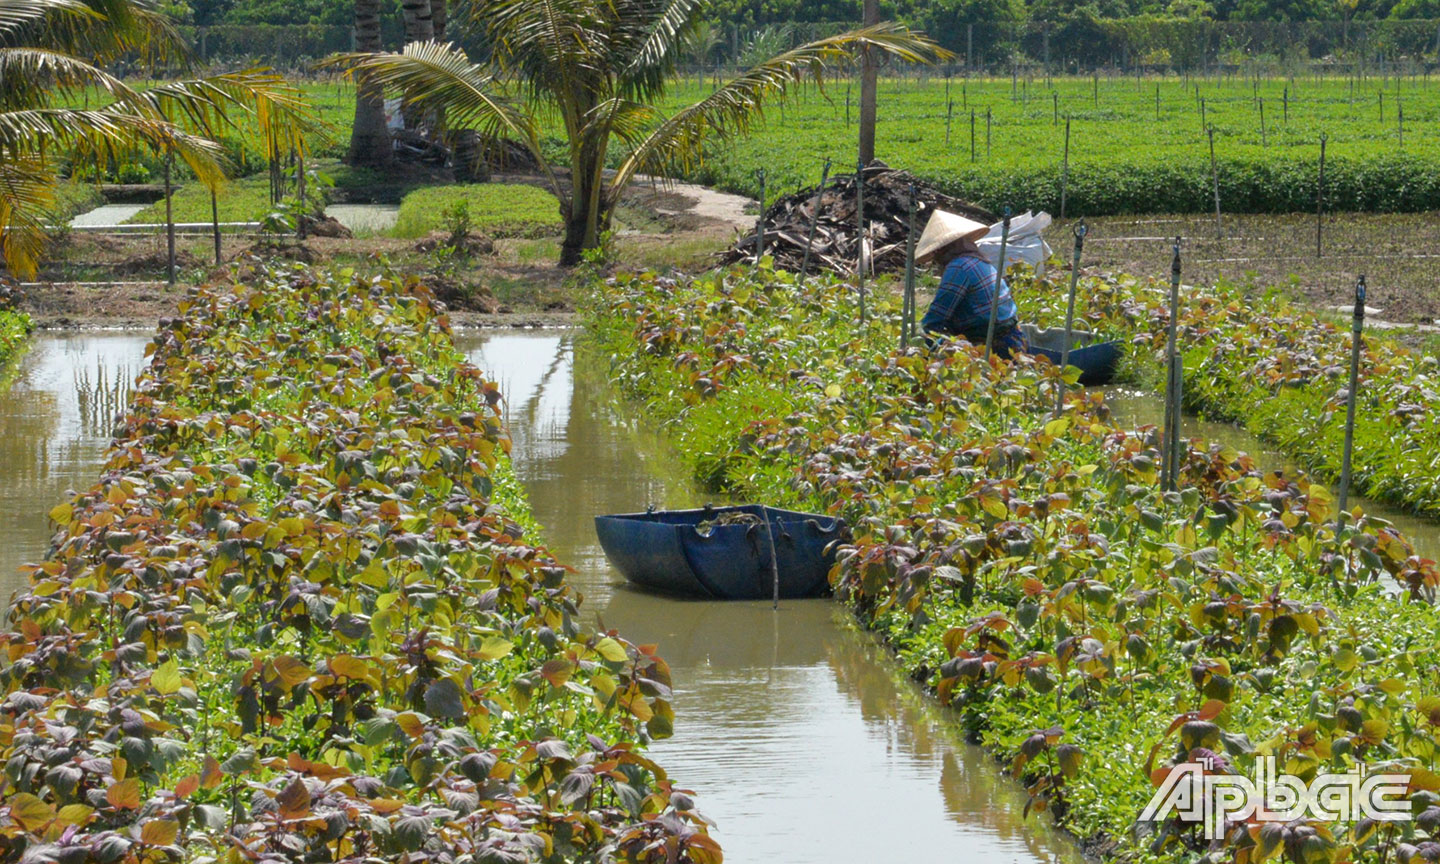 Các liếp rau ở huyện Châu Thành vẫn đang phát triển xanh tốt nhờ chủ động triển khai các biện pháp phòng, chống hạn, mặn.